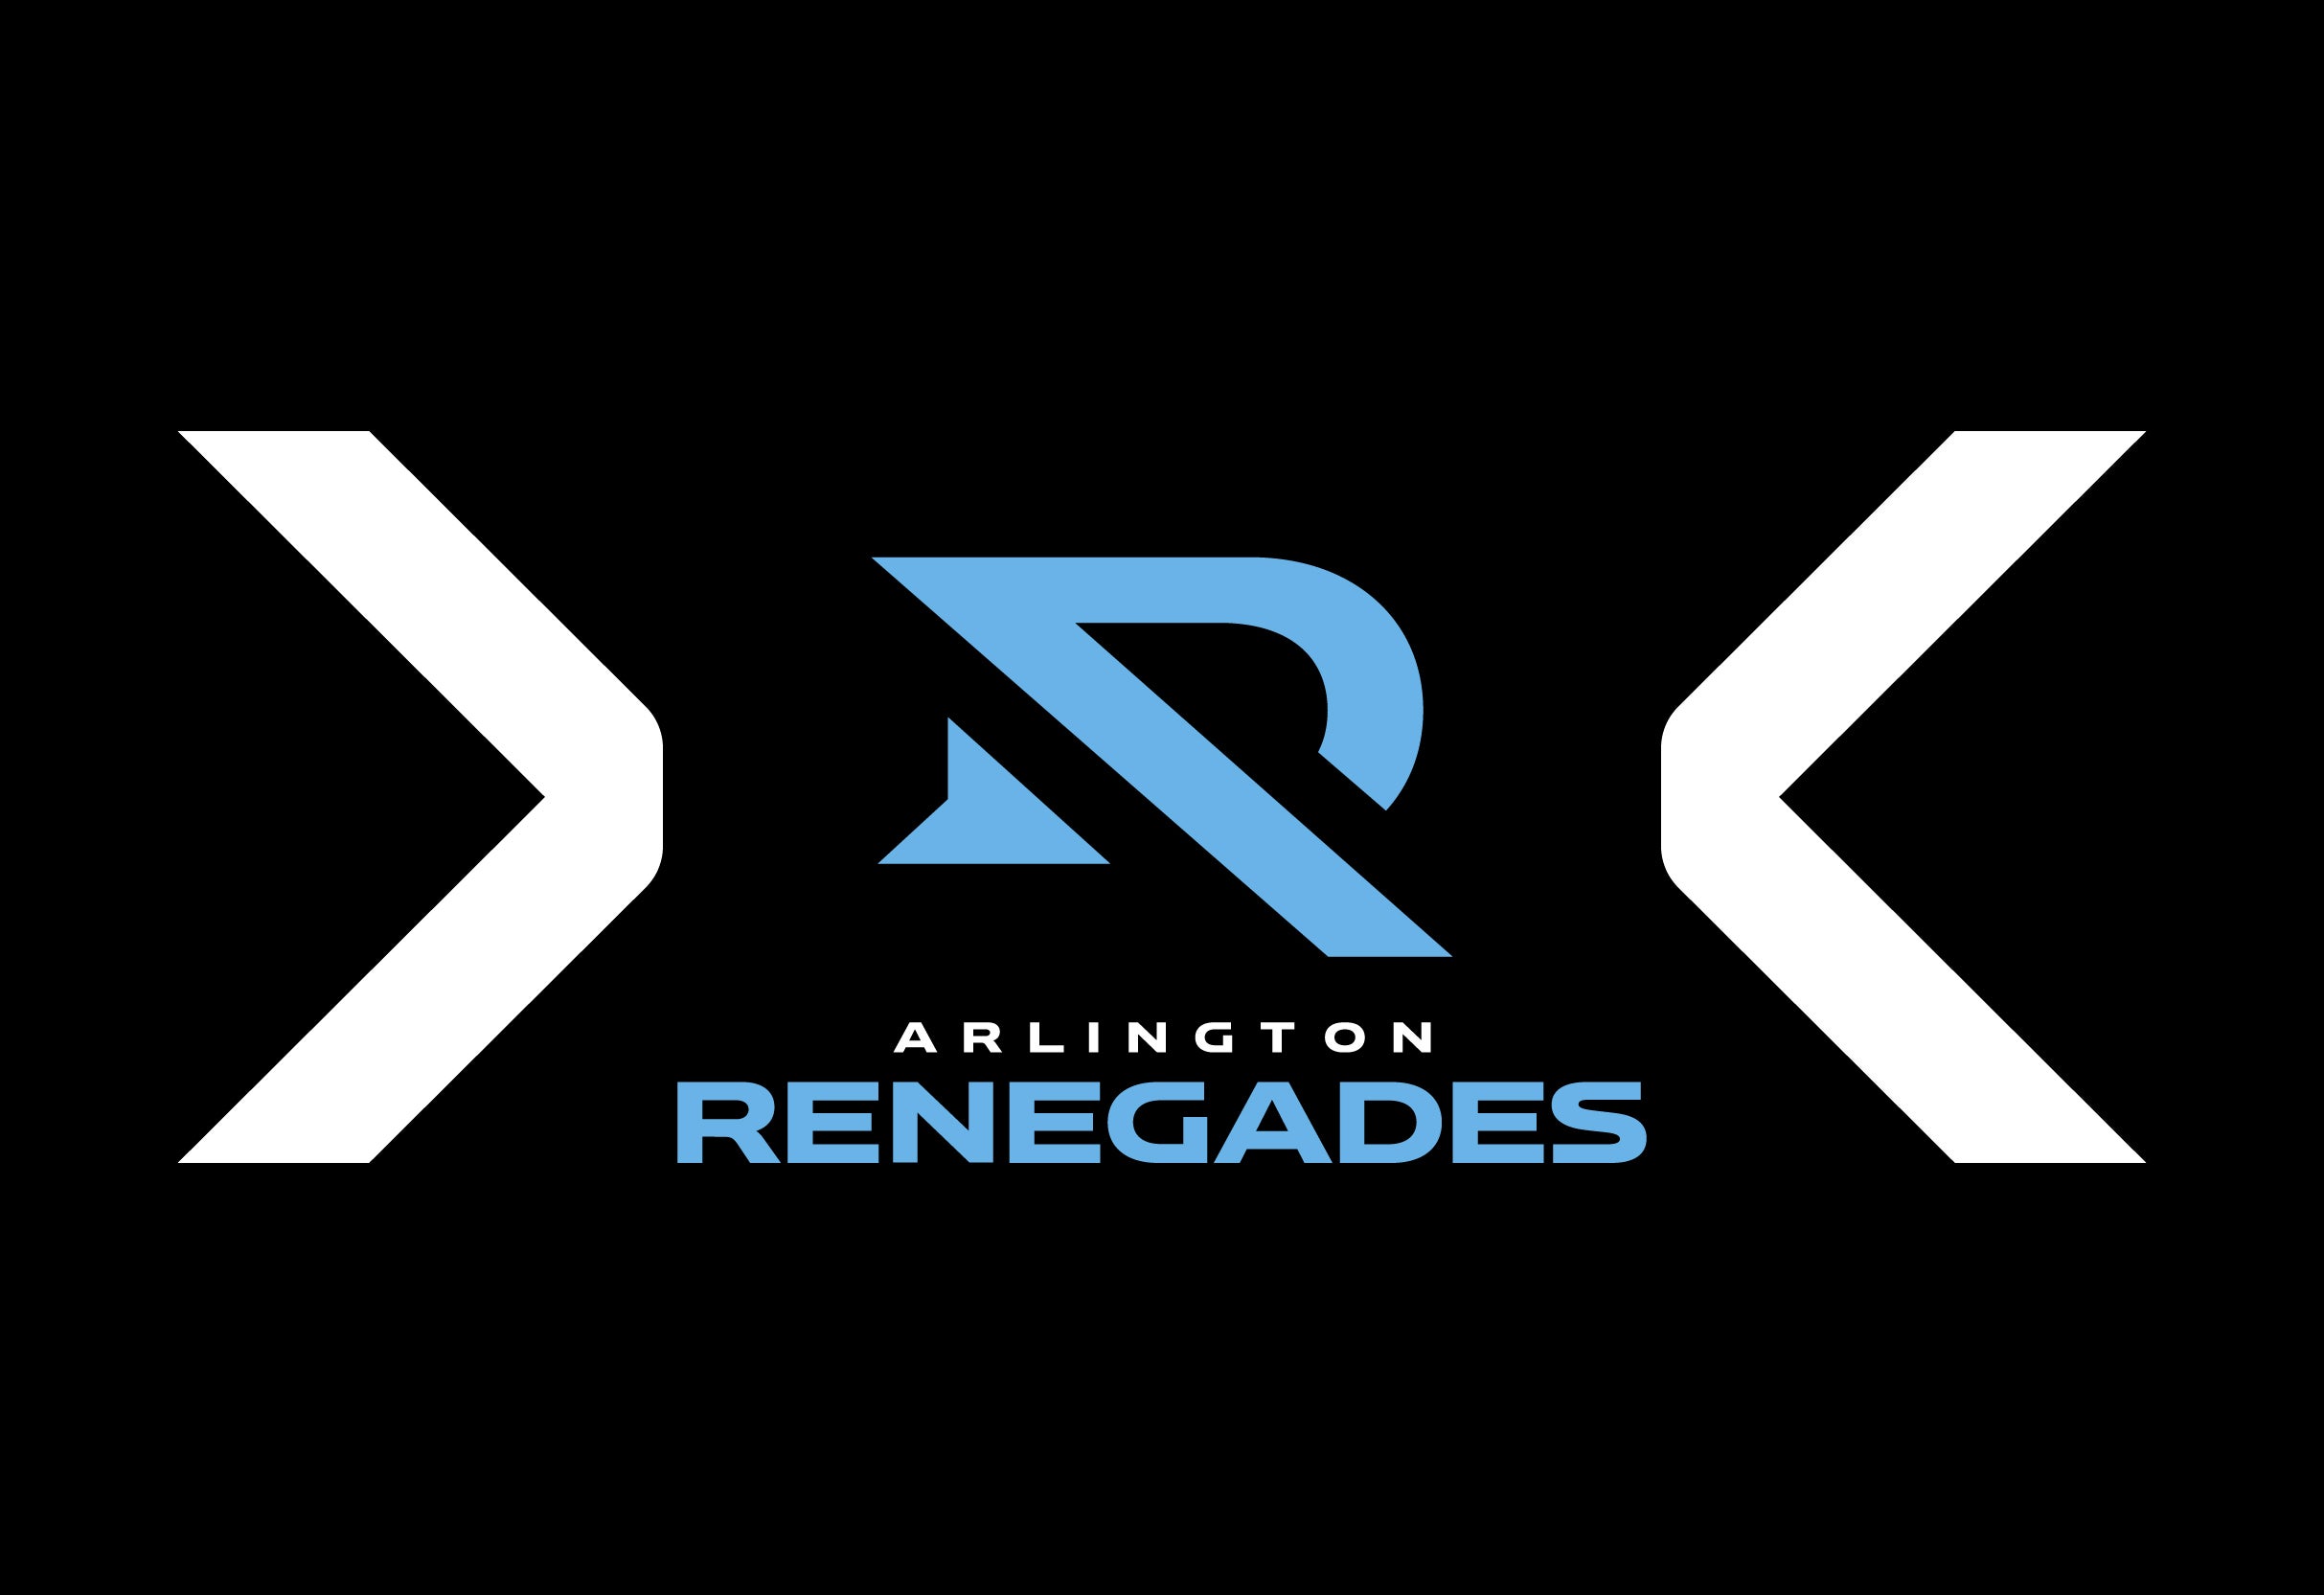 Arlington Renegades vs. Orlando Guardians in Arlington promo photo for Venue Presales presale offer code